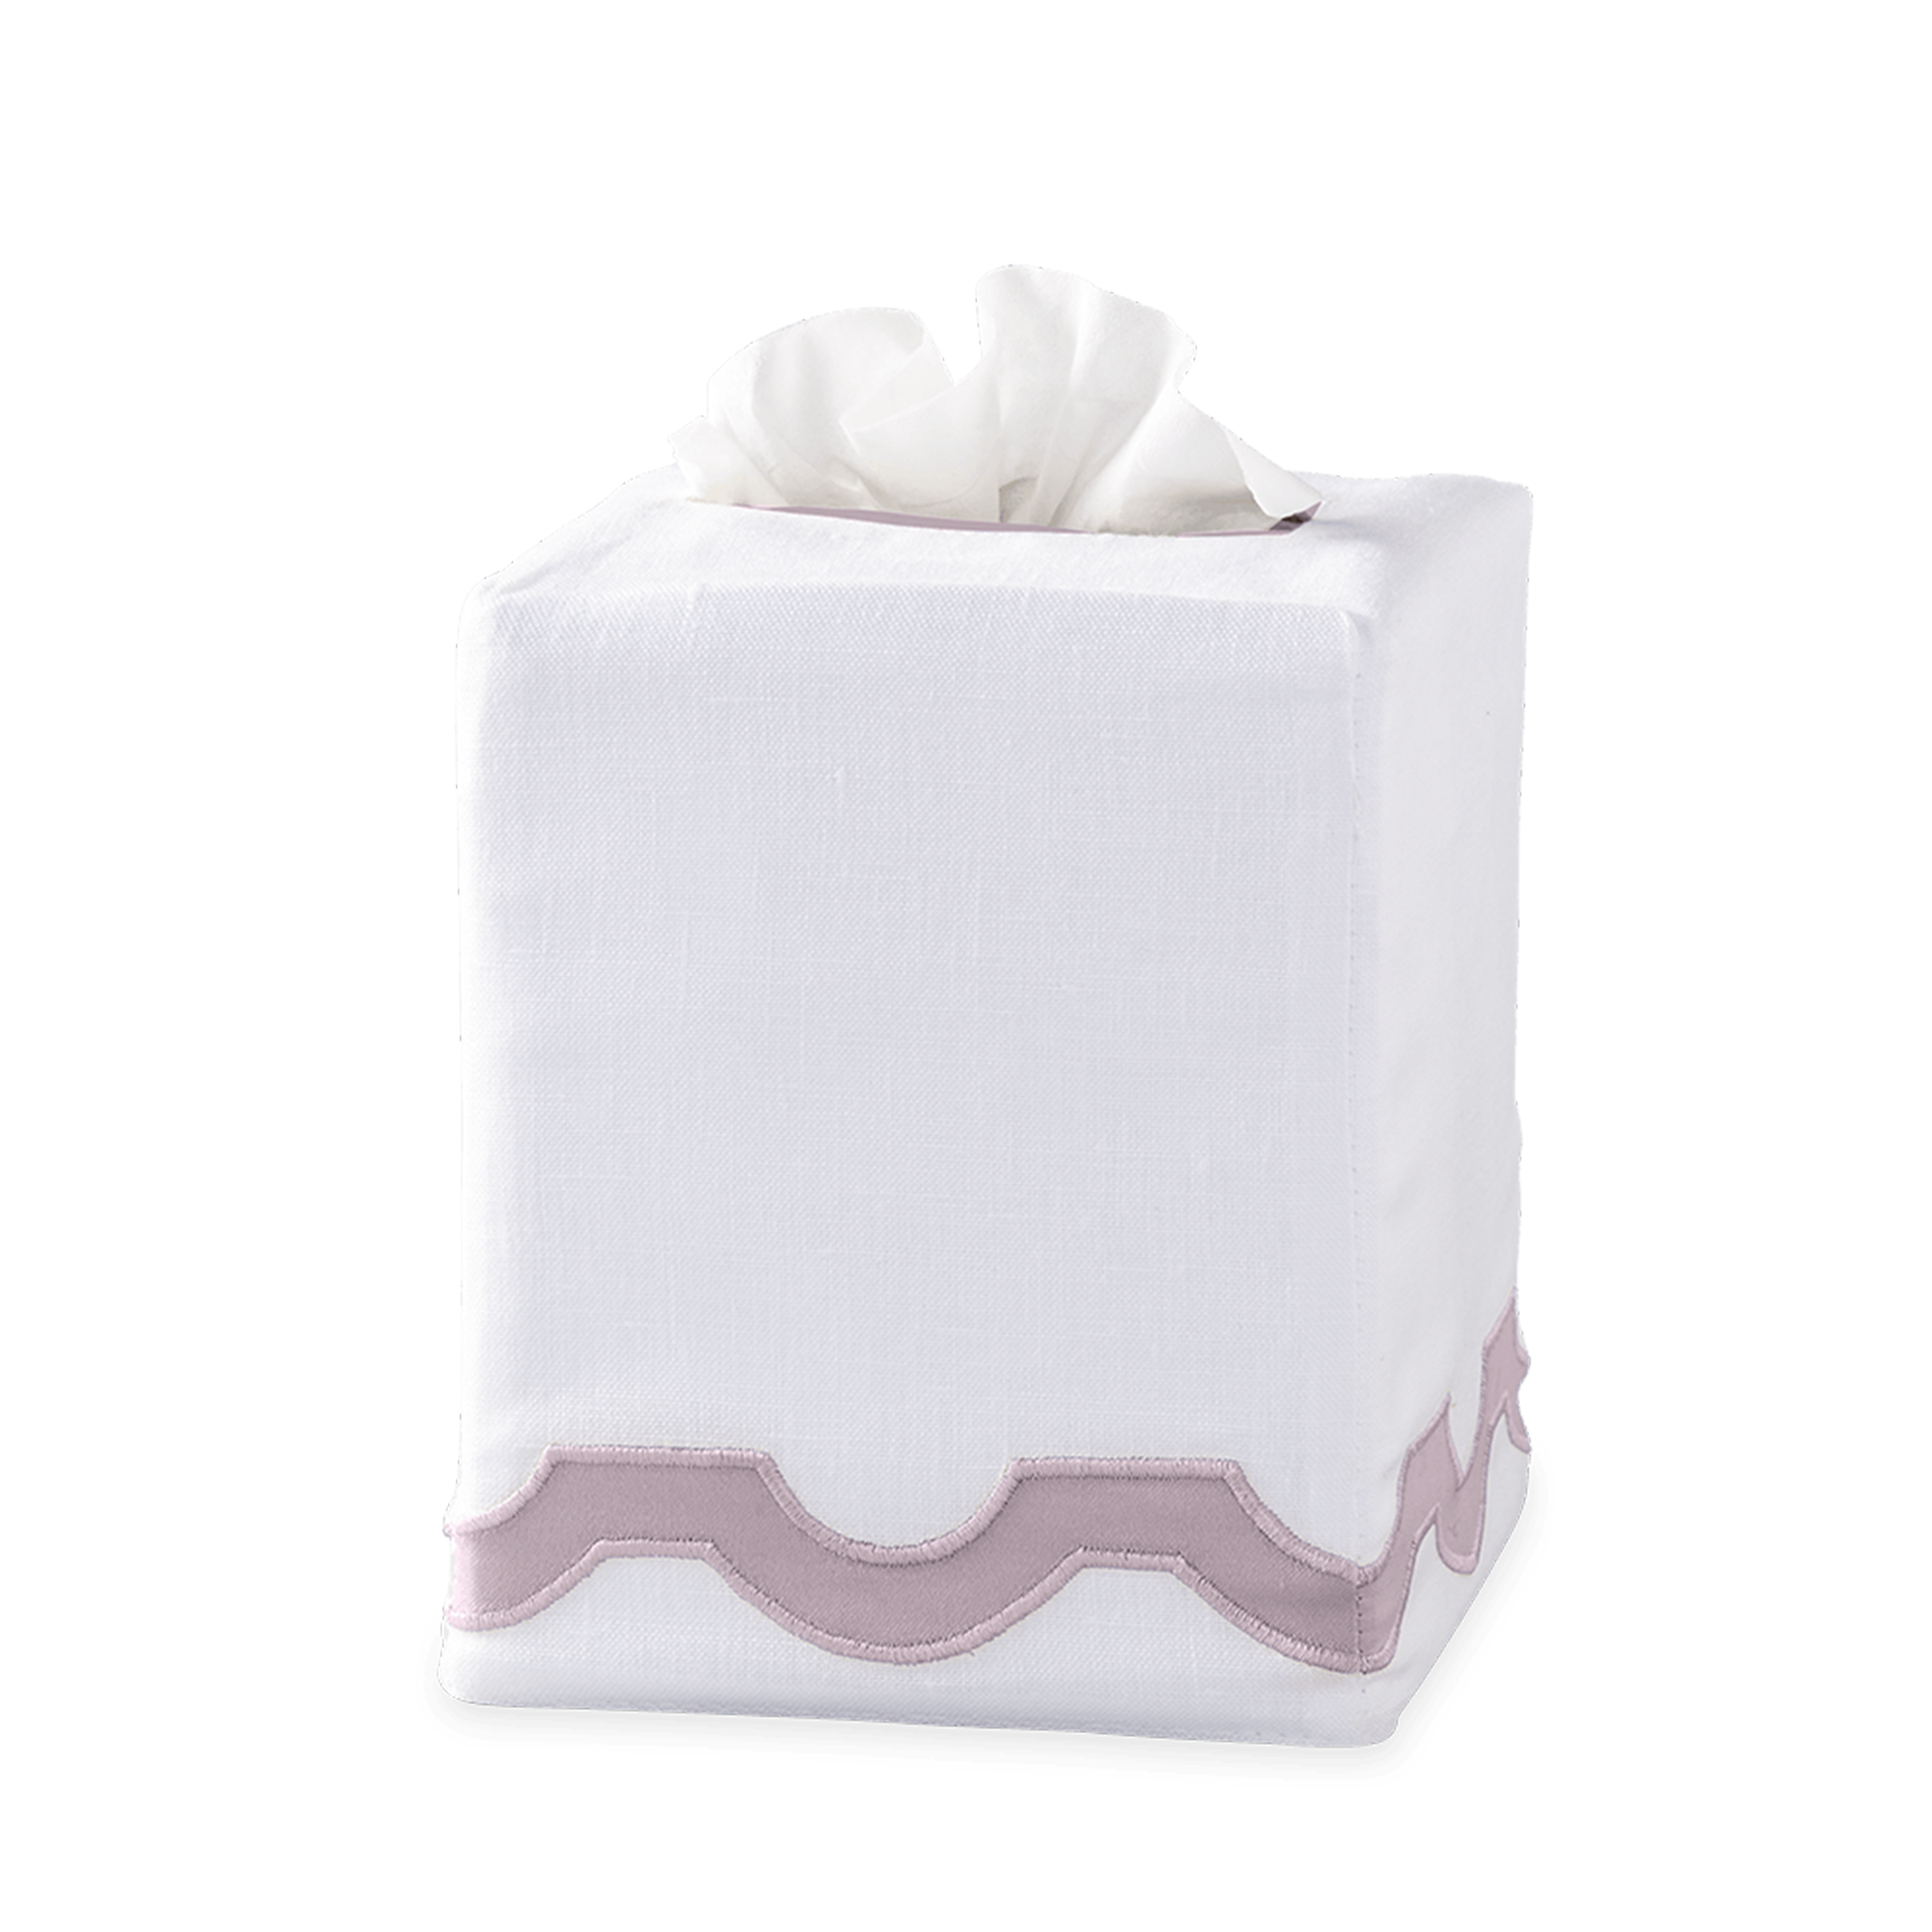 Silo Image of Matouk Mirasol Tissue Box Cover in Deep Lilac Color